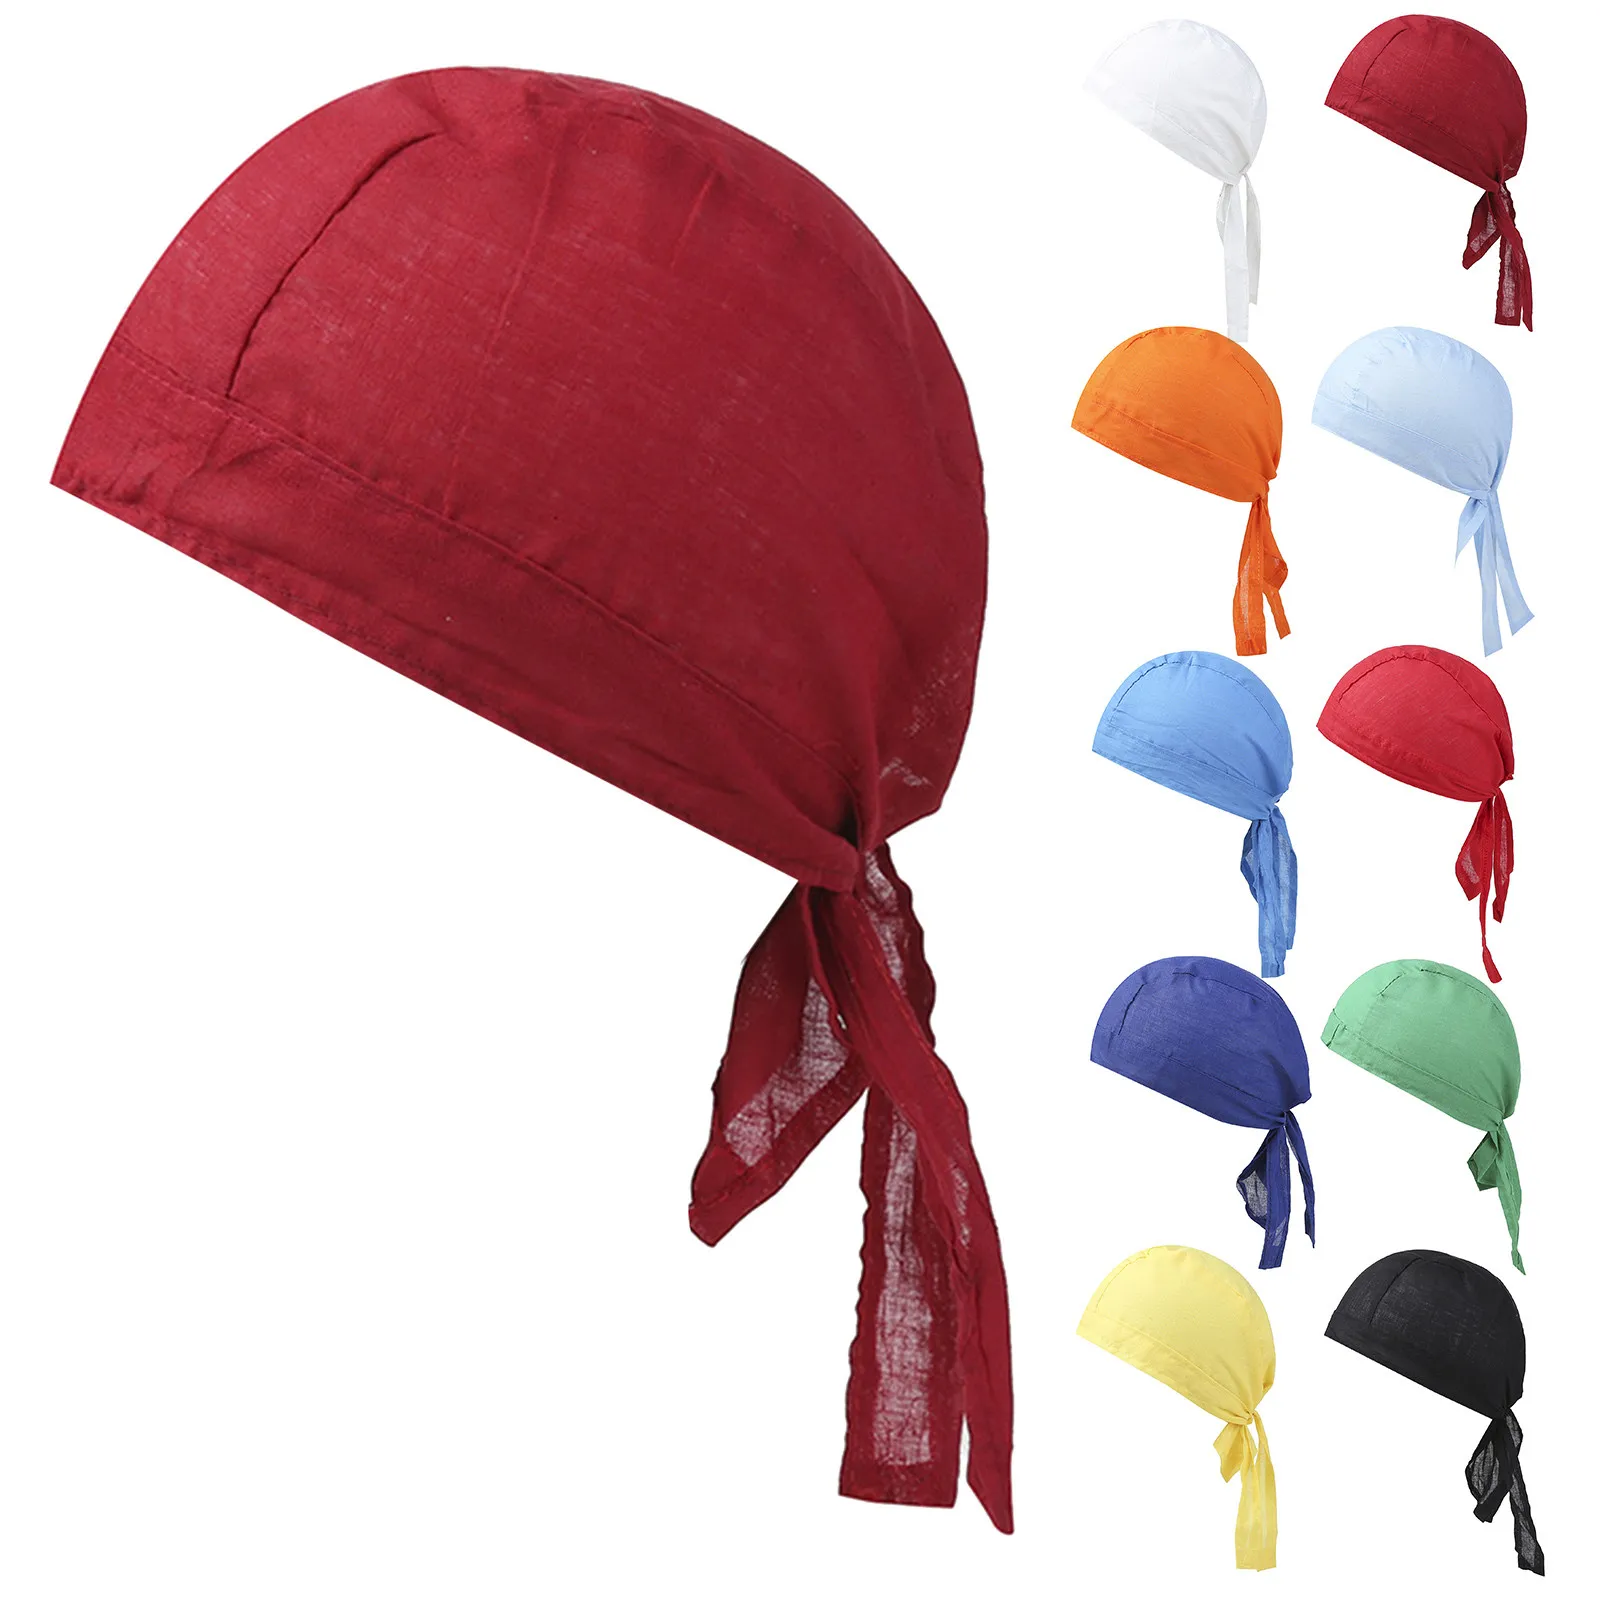 Велосипедные кепки, впитывающие пот, кепки-бини, Велосипедный платок, повязка на голову, Пиратская шляпа, кепка-бини для улицы, хип-хоп кепки Westcoast